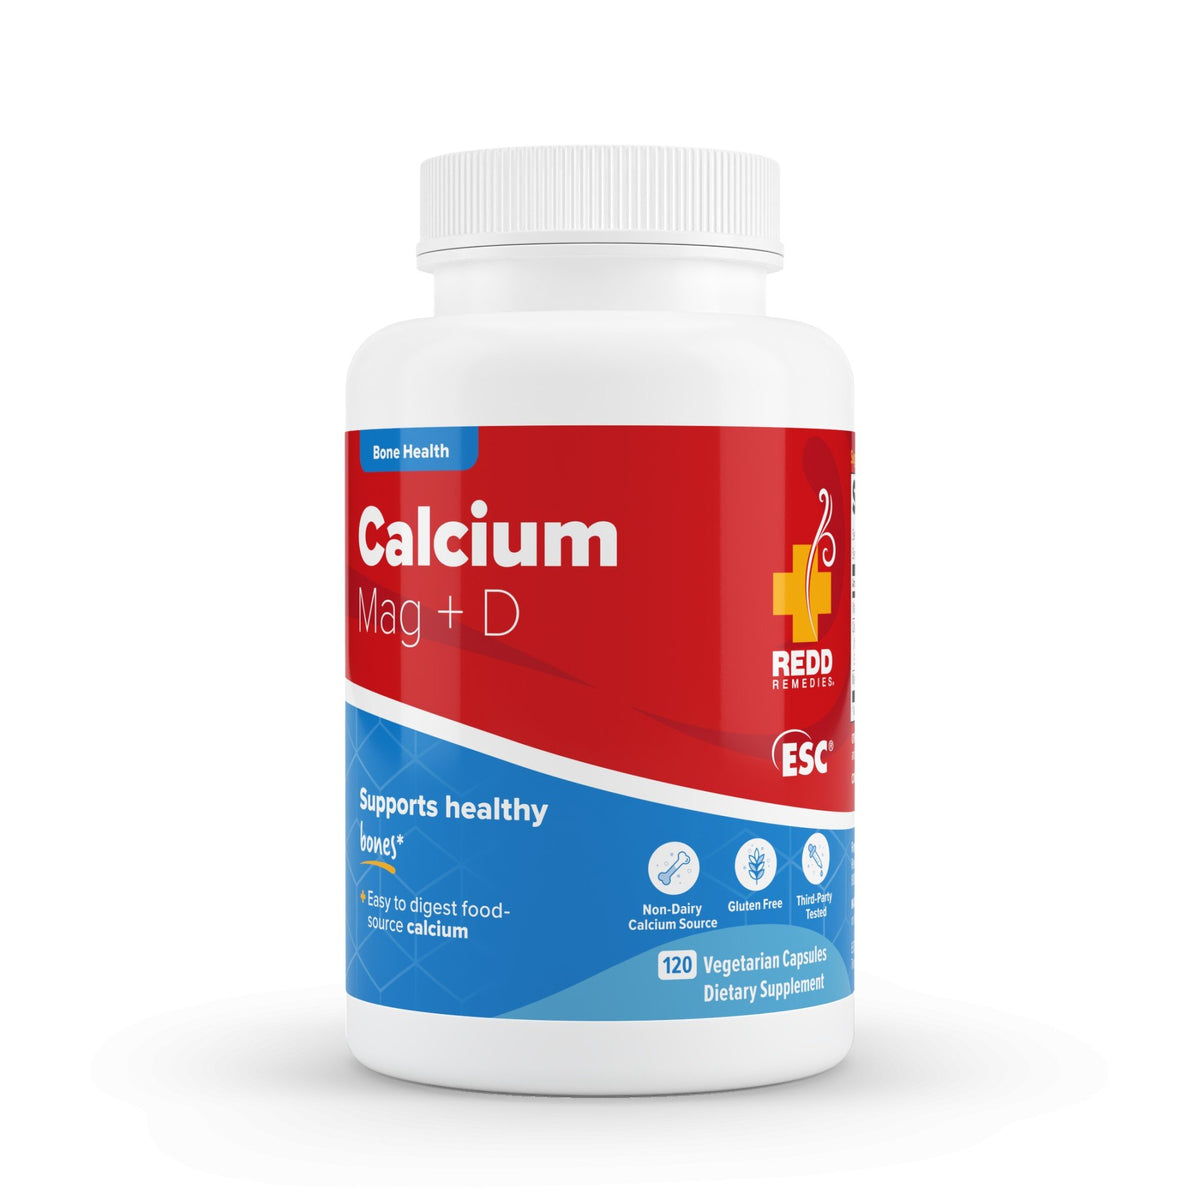 Redd Remedies Bone Health Calcium Mag + D 120 Vegetarian Capsules